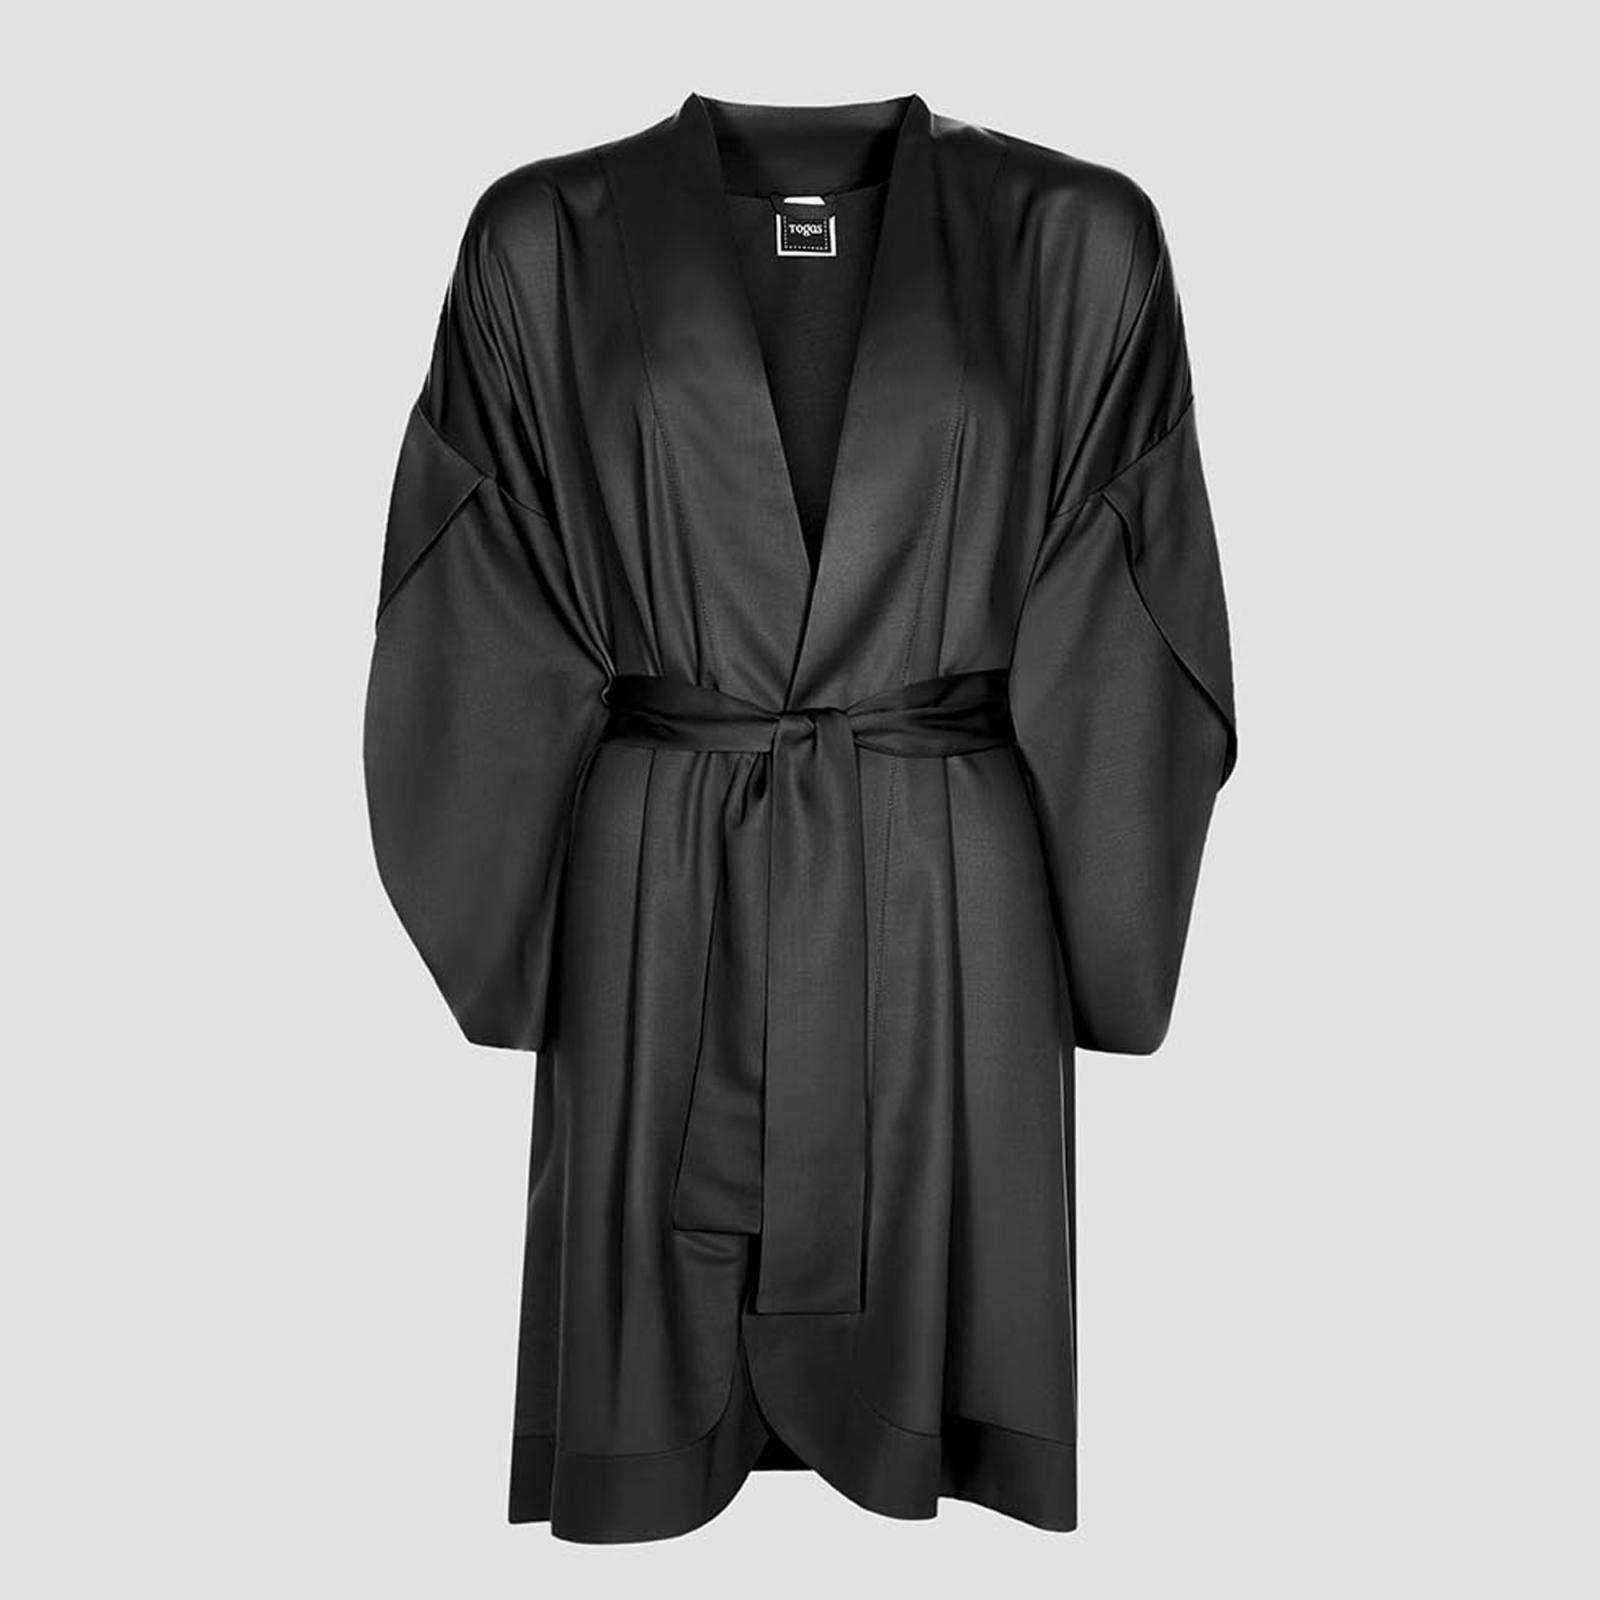 Халат-кимоно короткое Togas Наоми чёрное XS (42) платье кимоно